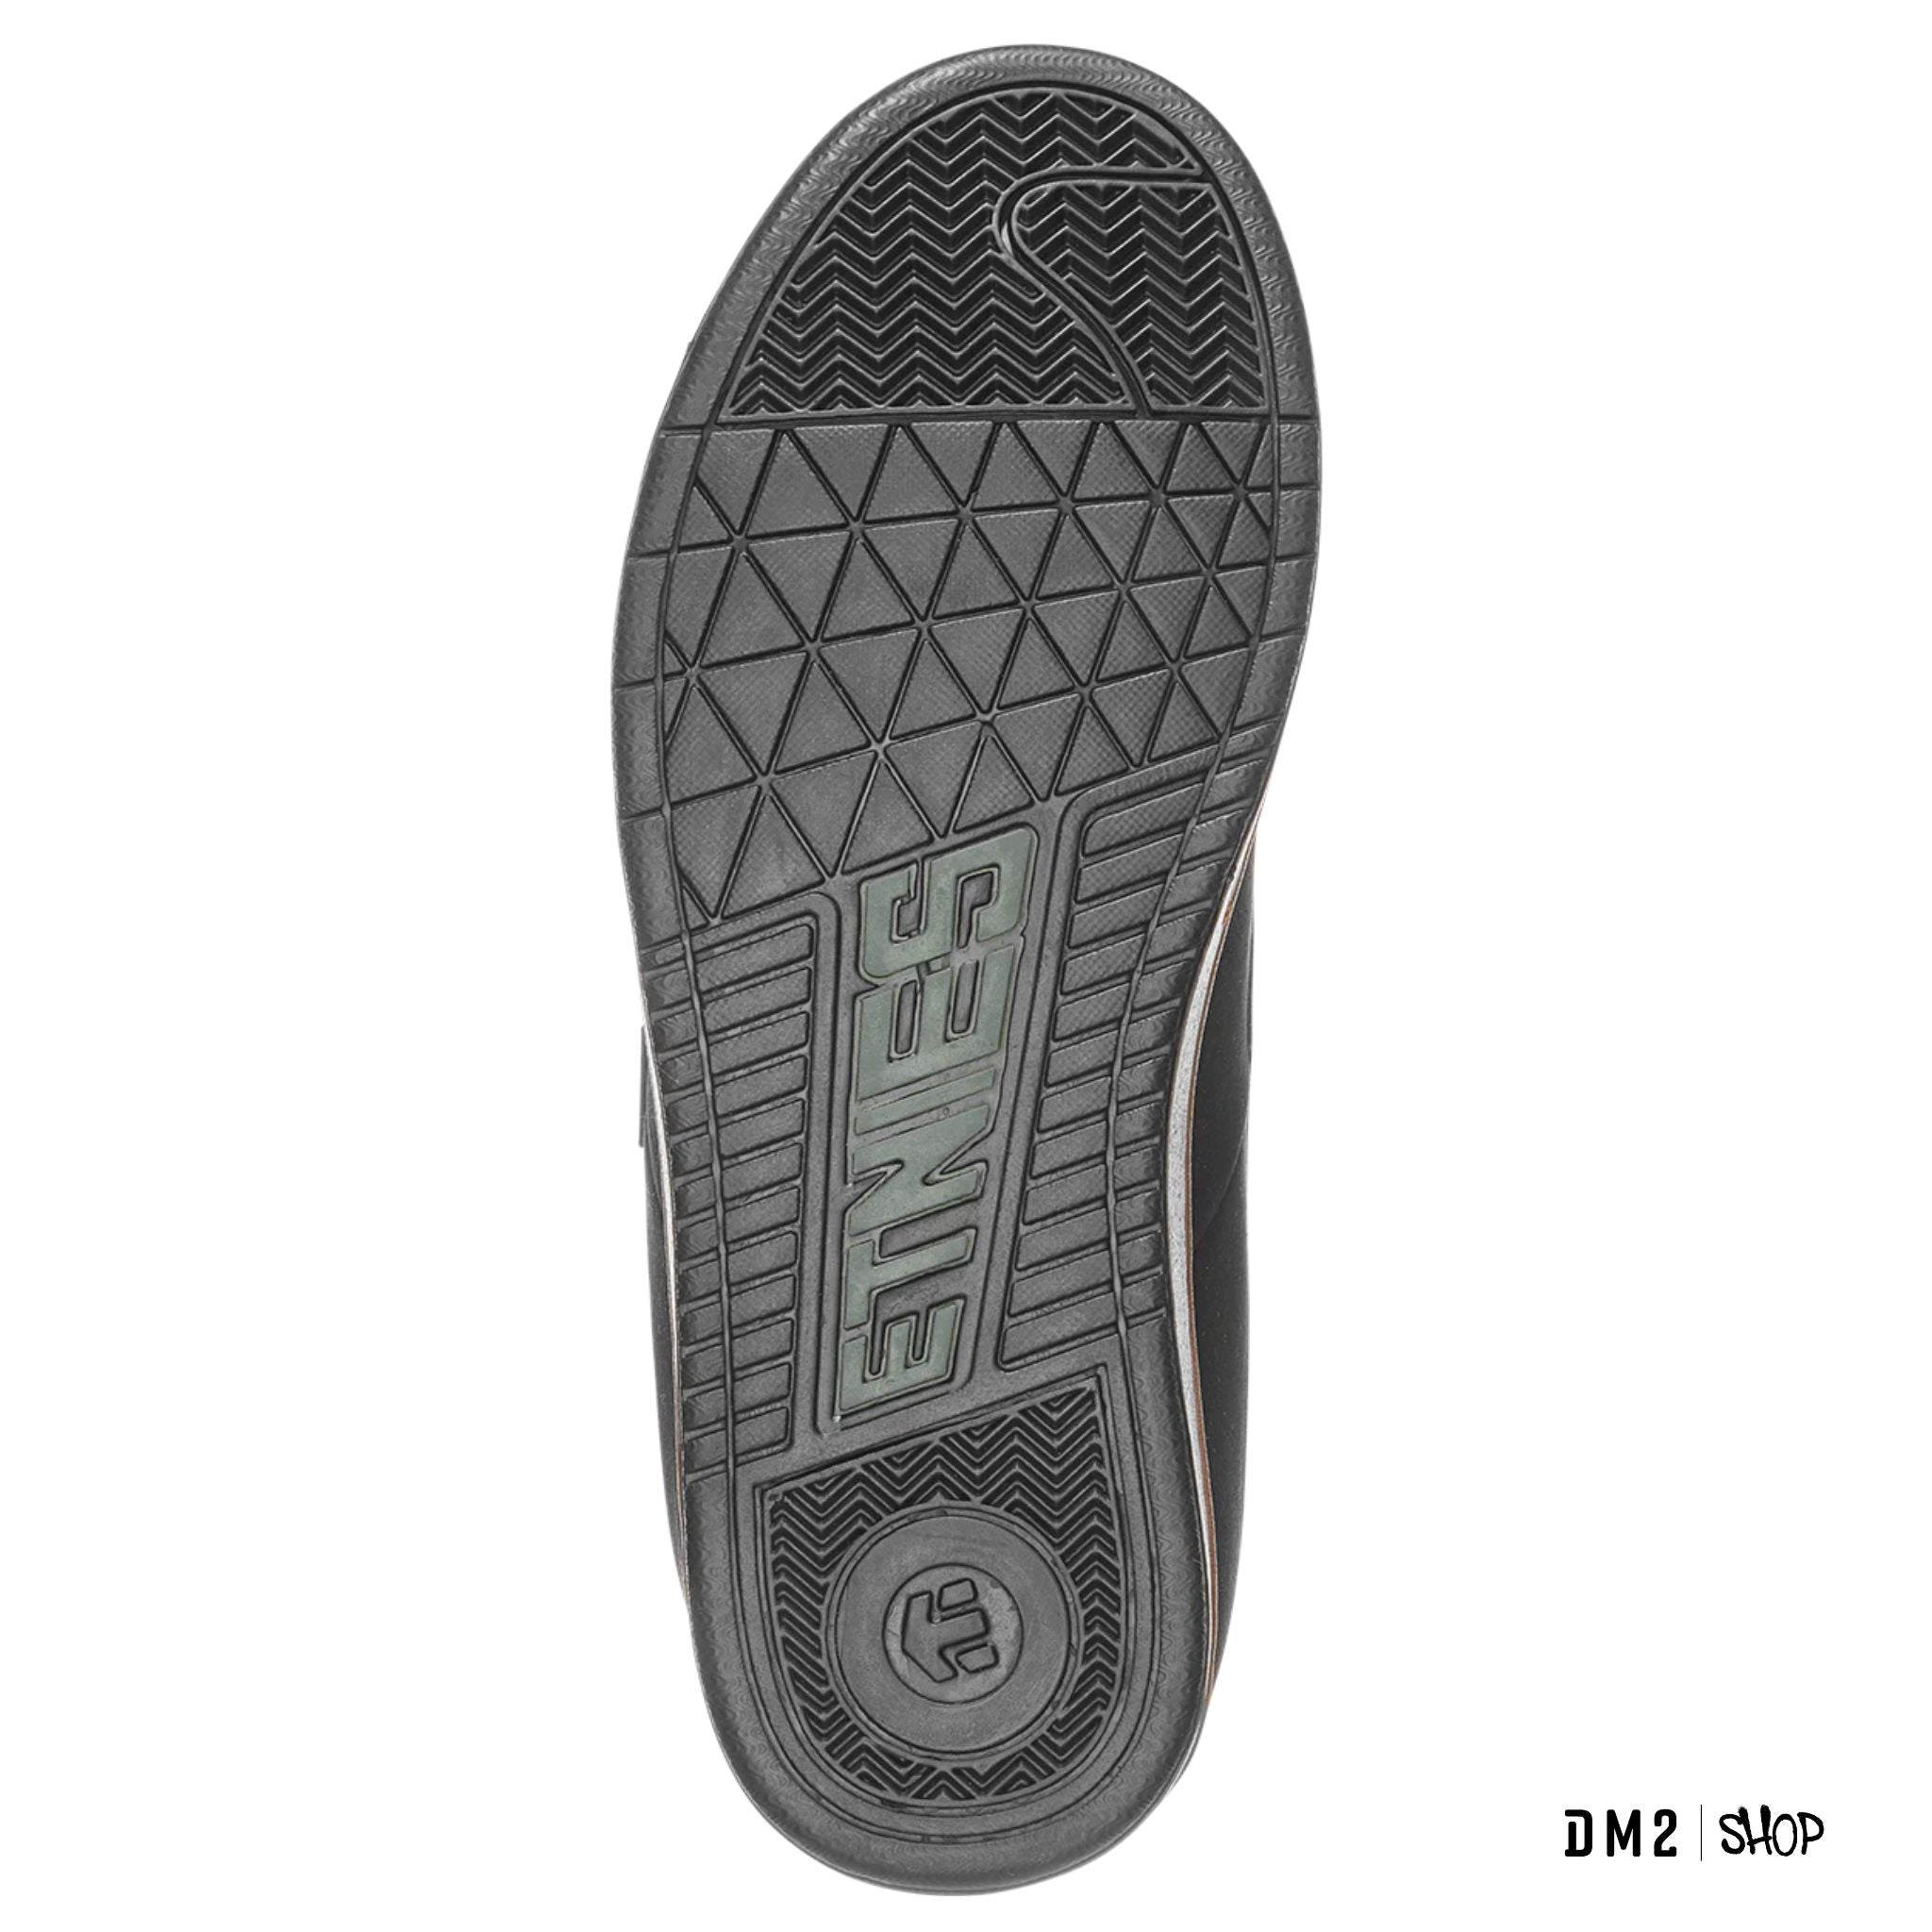 chaussure-kingpin-homme-etnies-noir-4101000091-566, SKATE SHOP, DM2 SHOP, 03